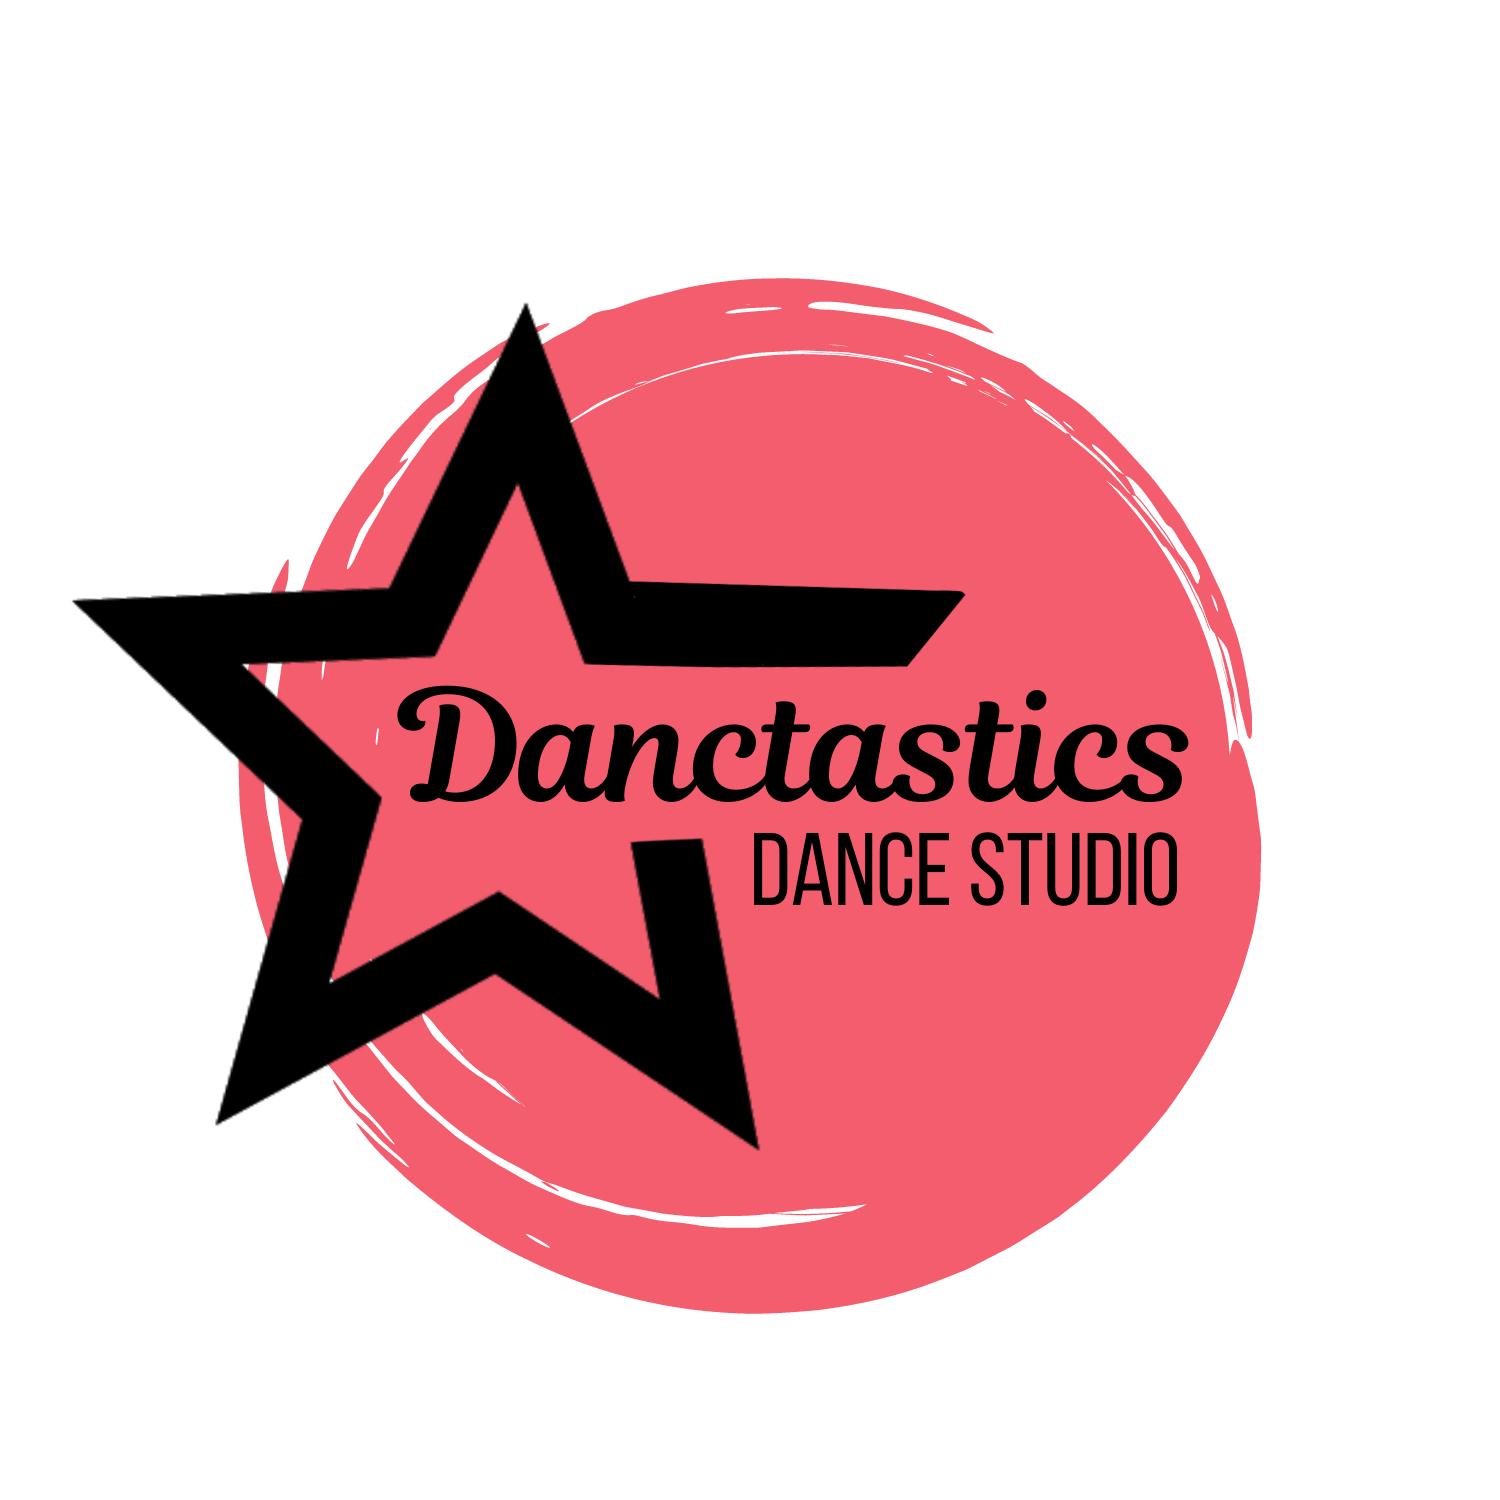 Danctastics Dance Studio